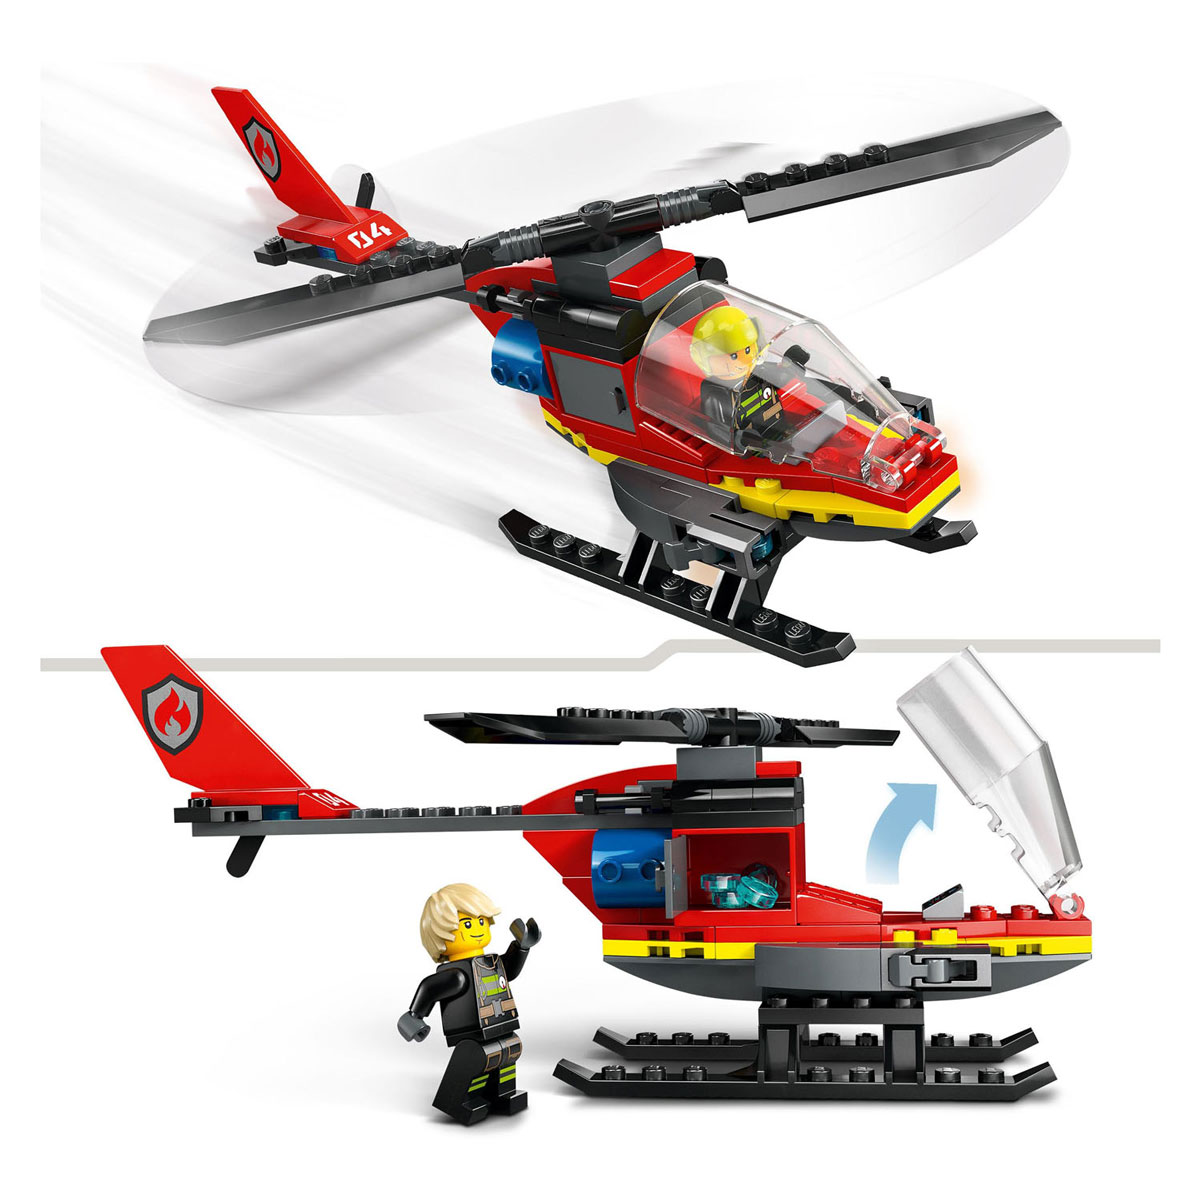 LEGO City 60411 Brandweerhelikopter